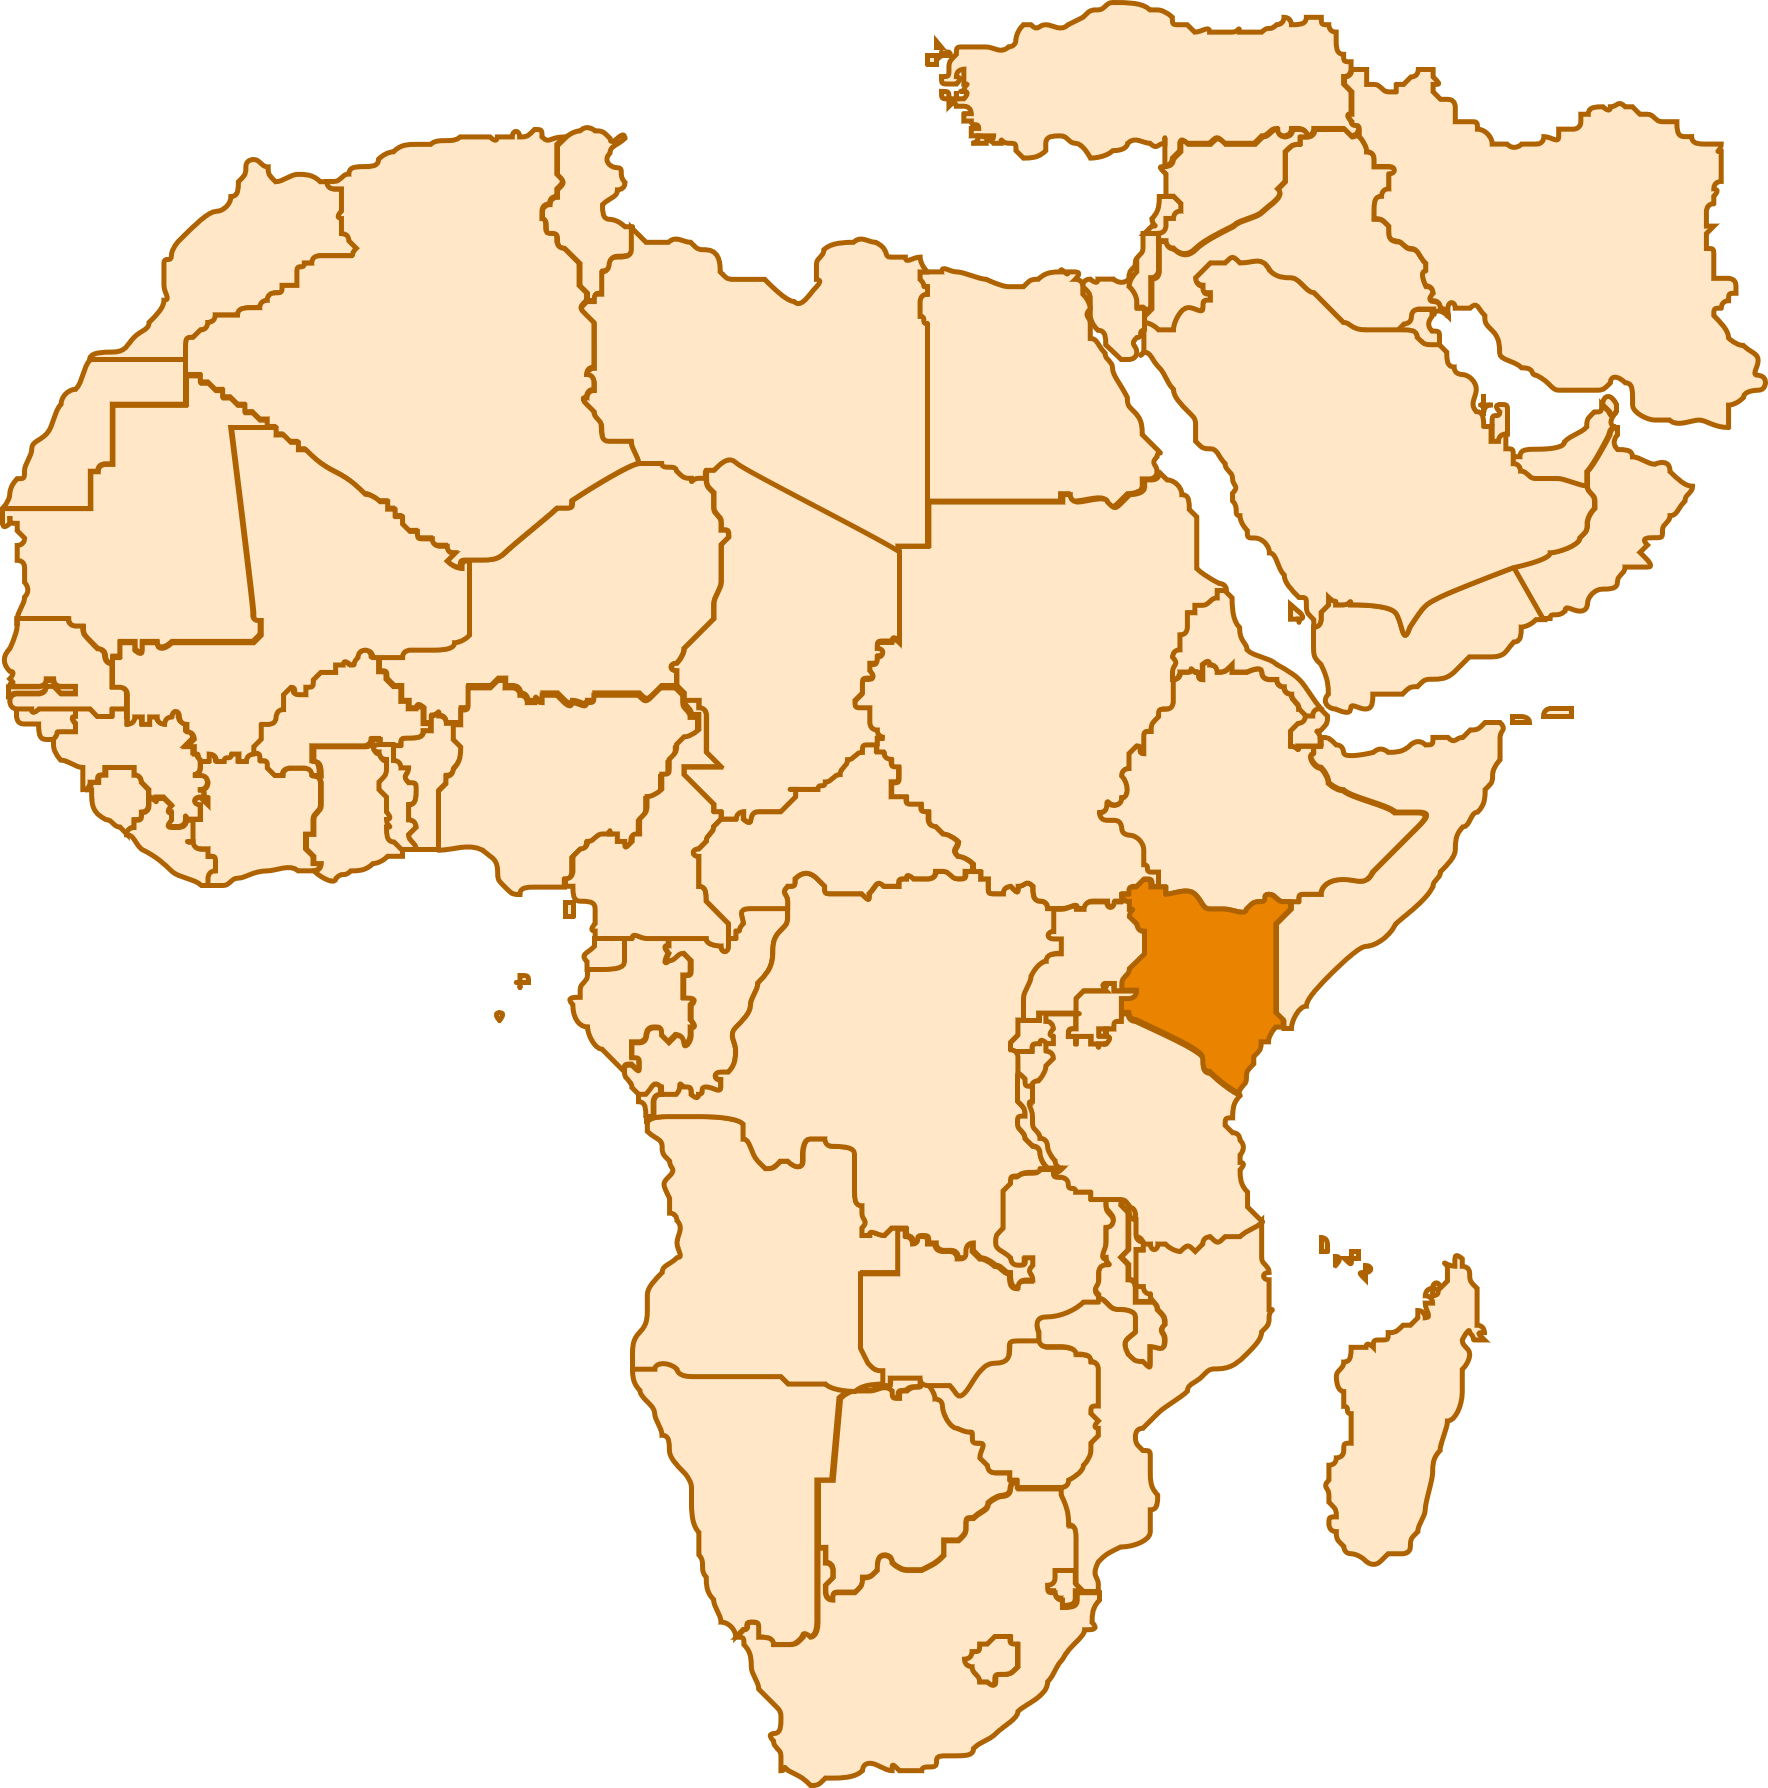 Middle-East & Africa, Kenya